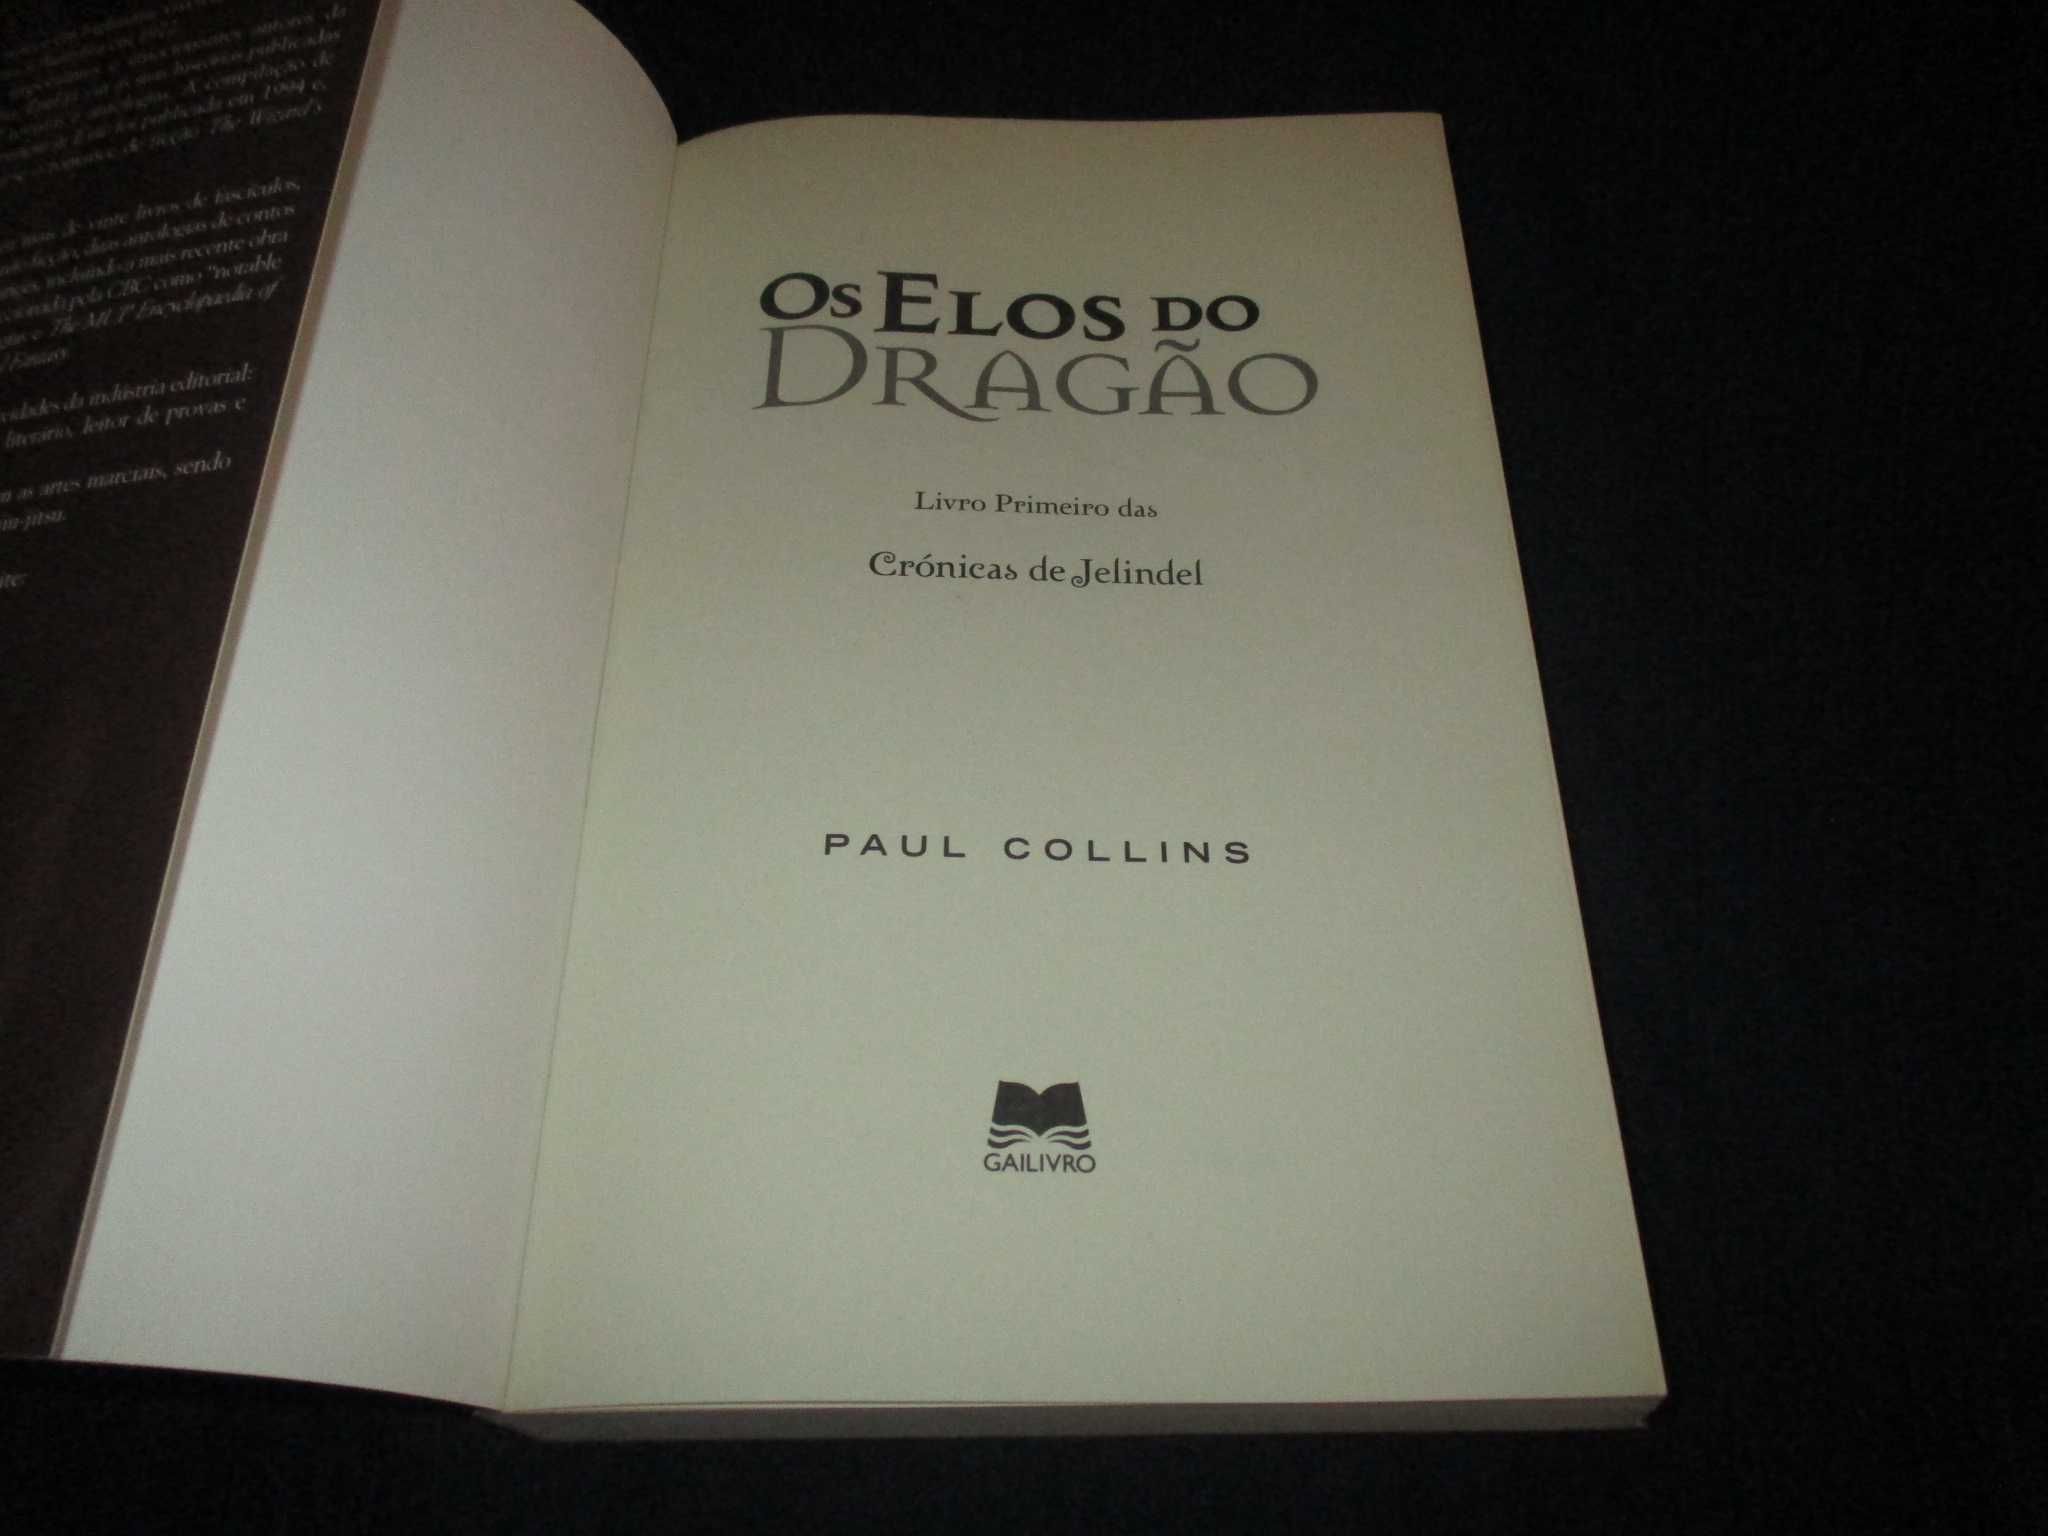 Livro Os Elos do Dragão Paul Collins Gailivro